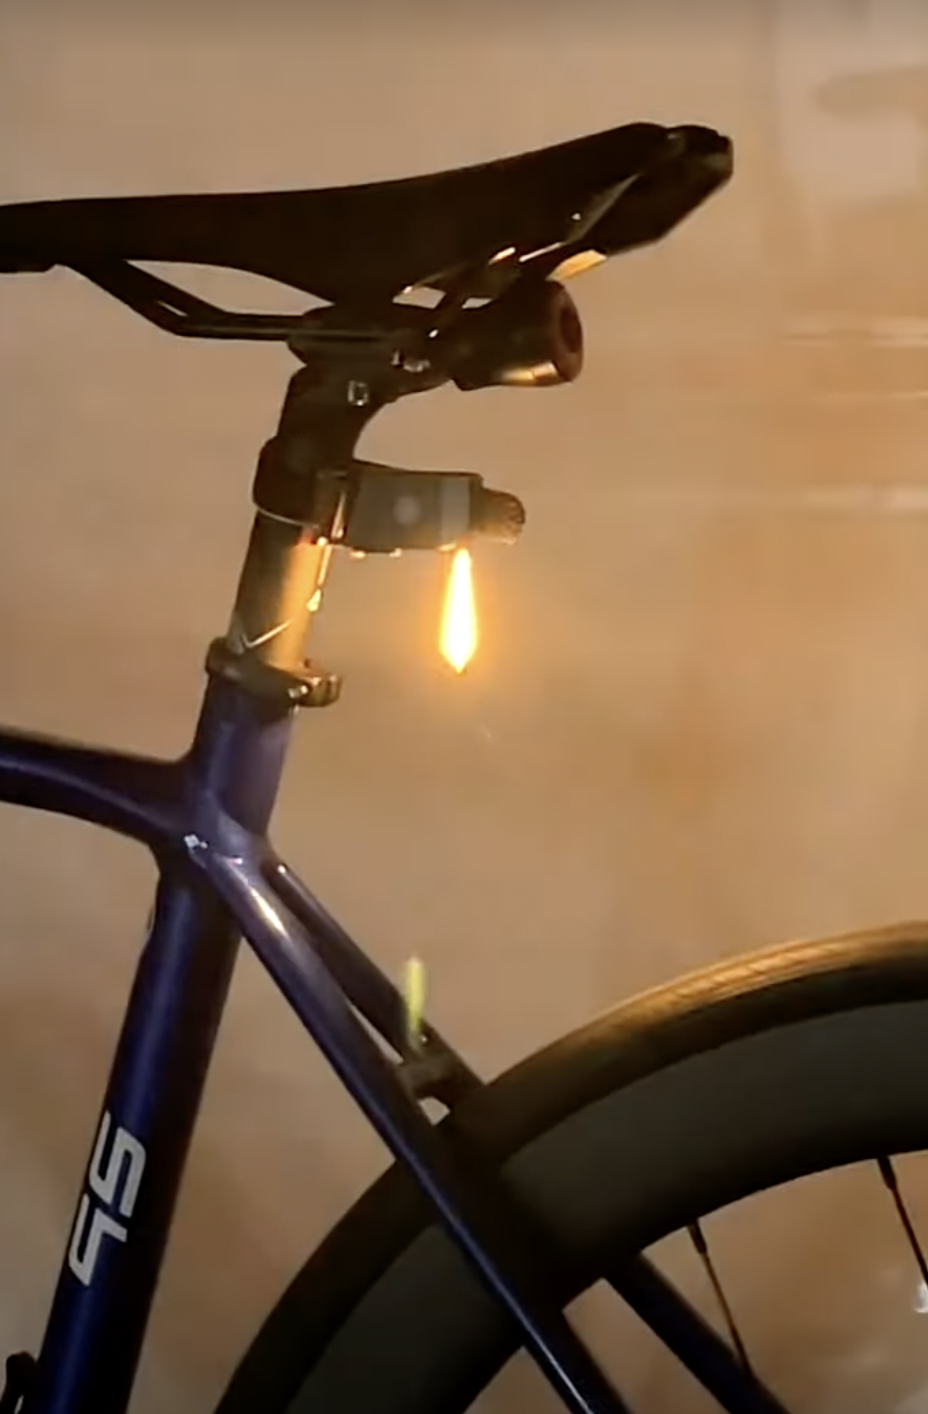 PhotonDrop - LED Bike Tail Light